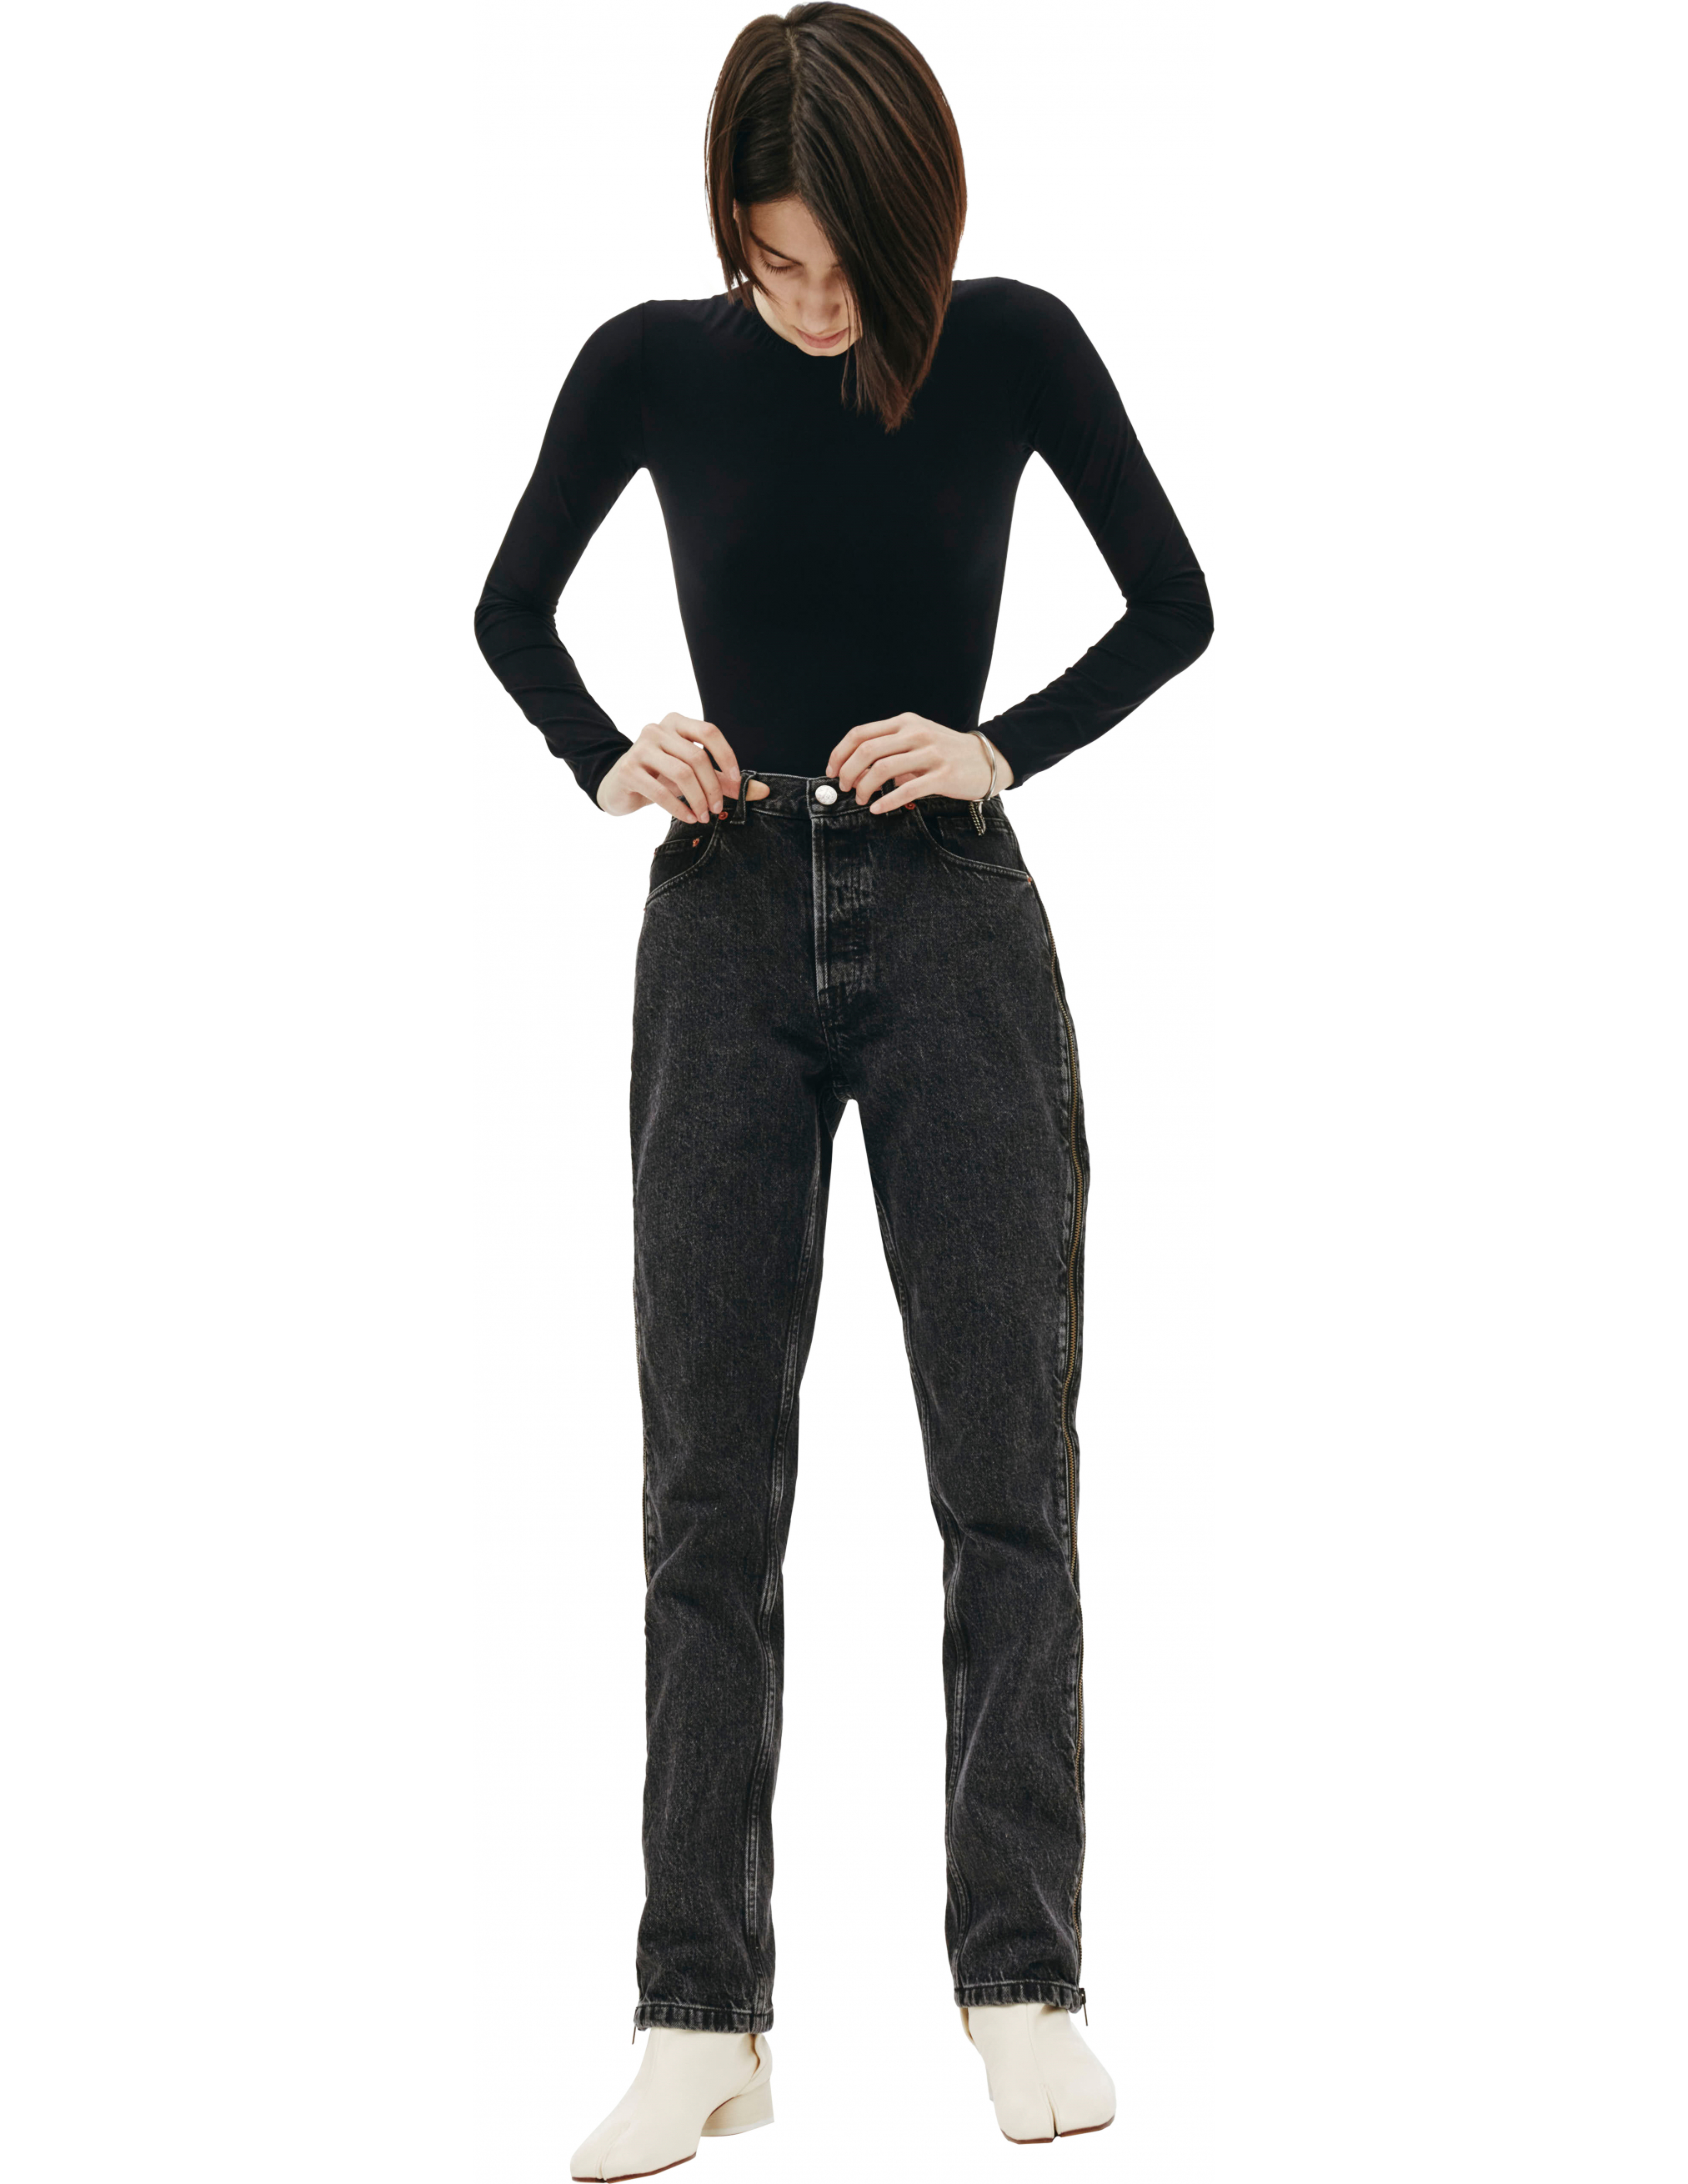 Черные джинсы с молниями по бокам - Vetements SS20PA332/blk